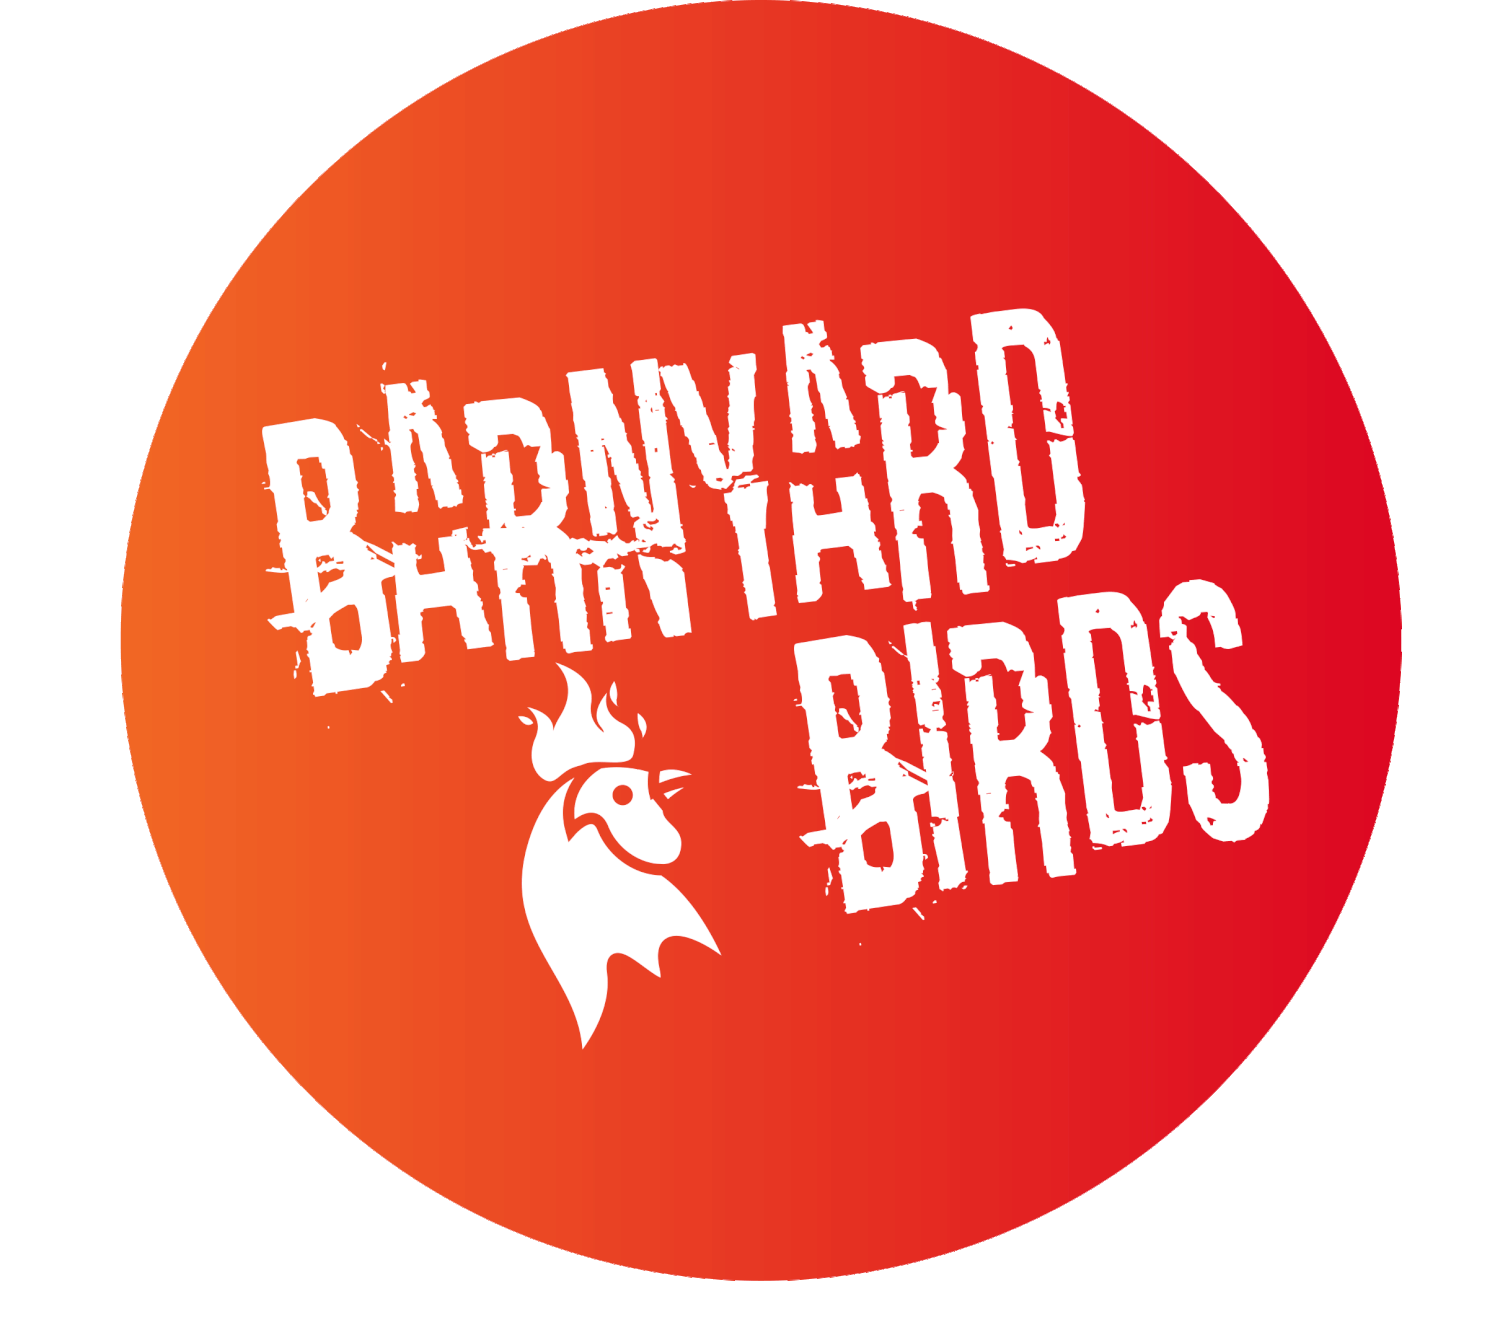 Barnyard Birds